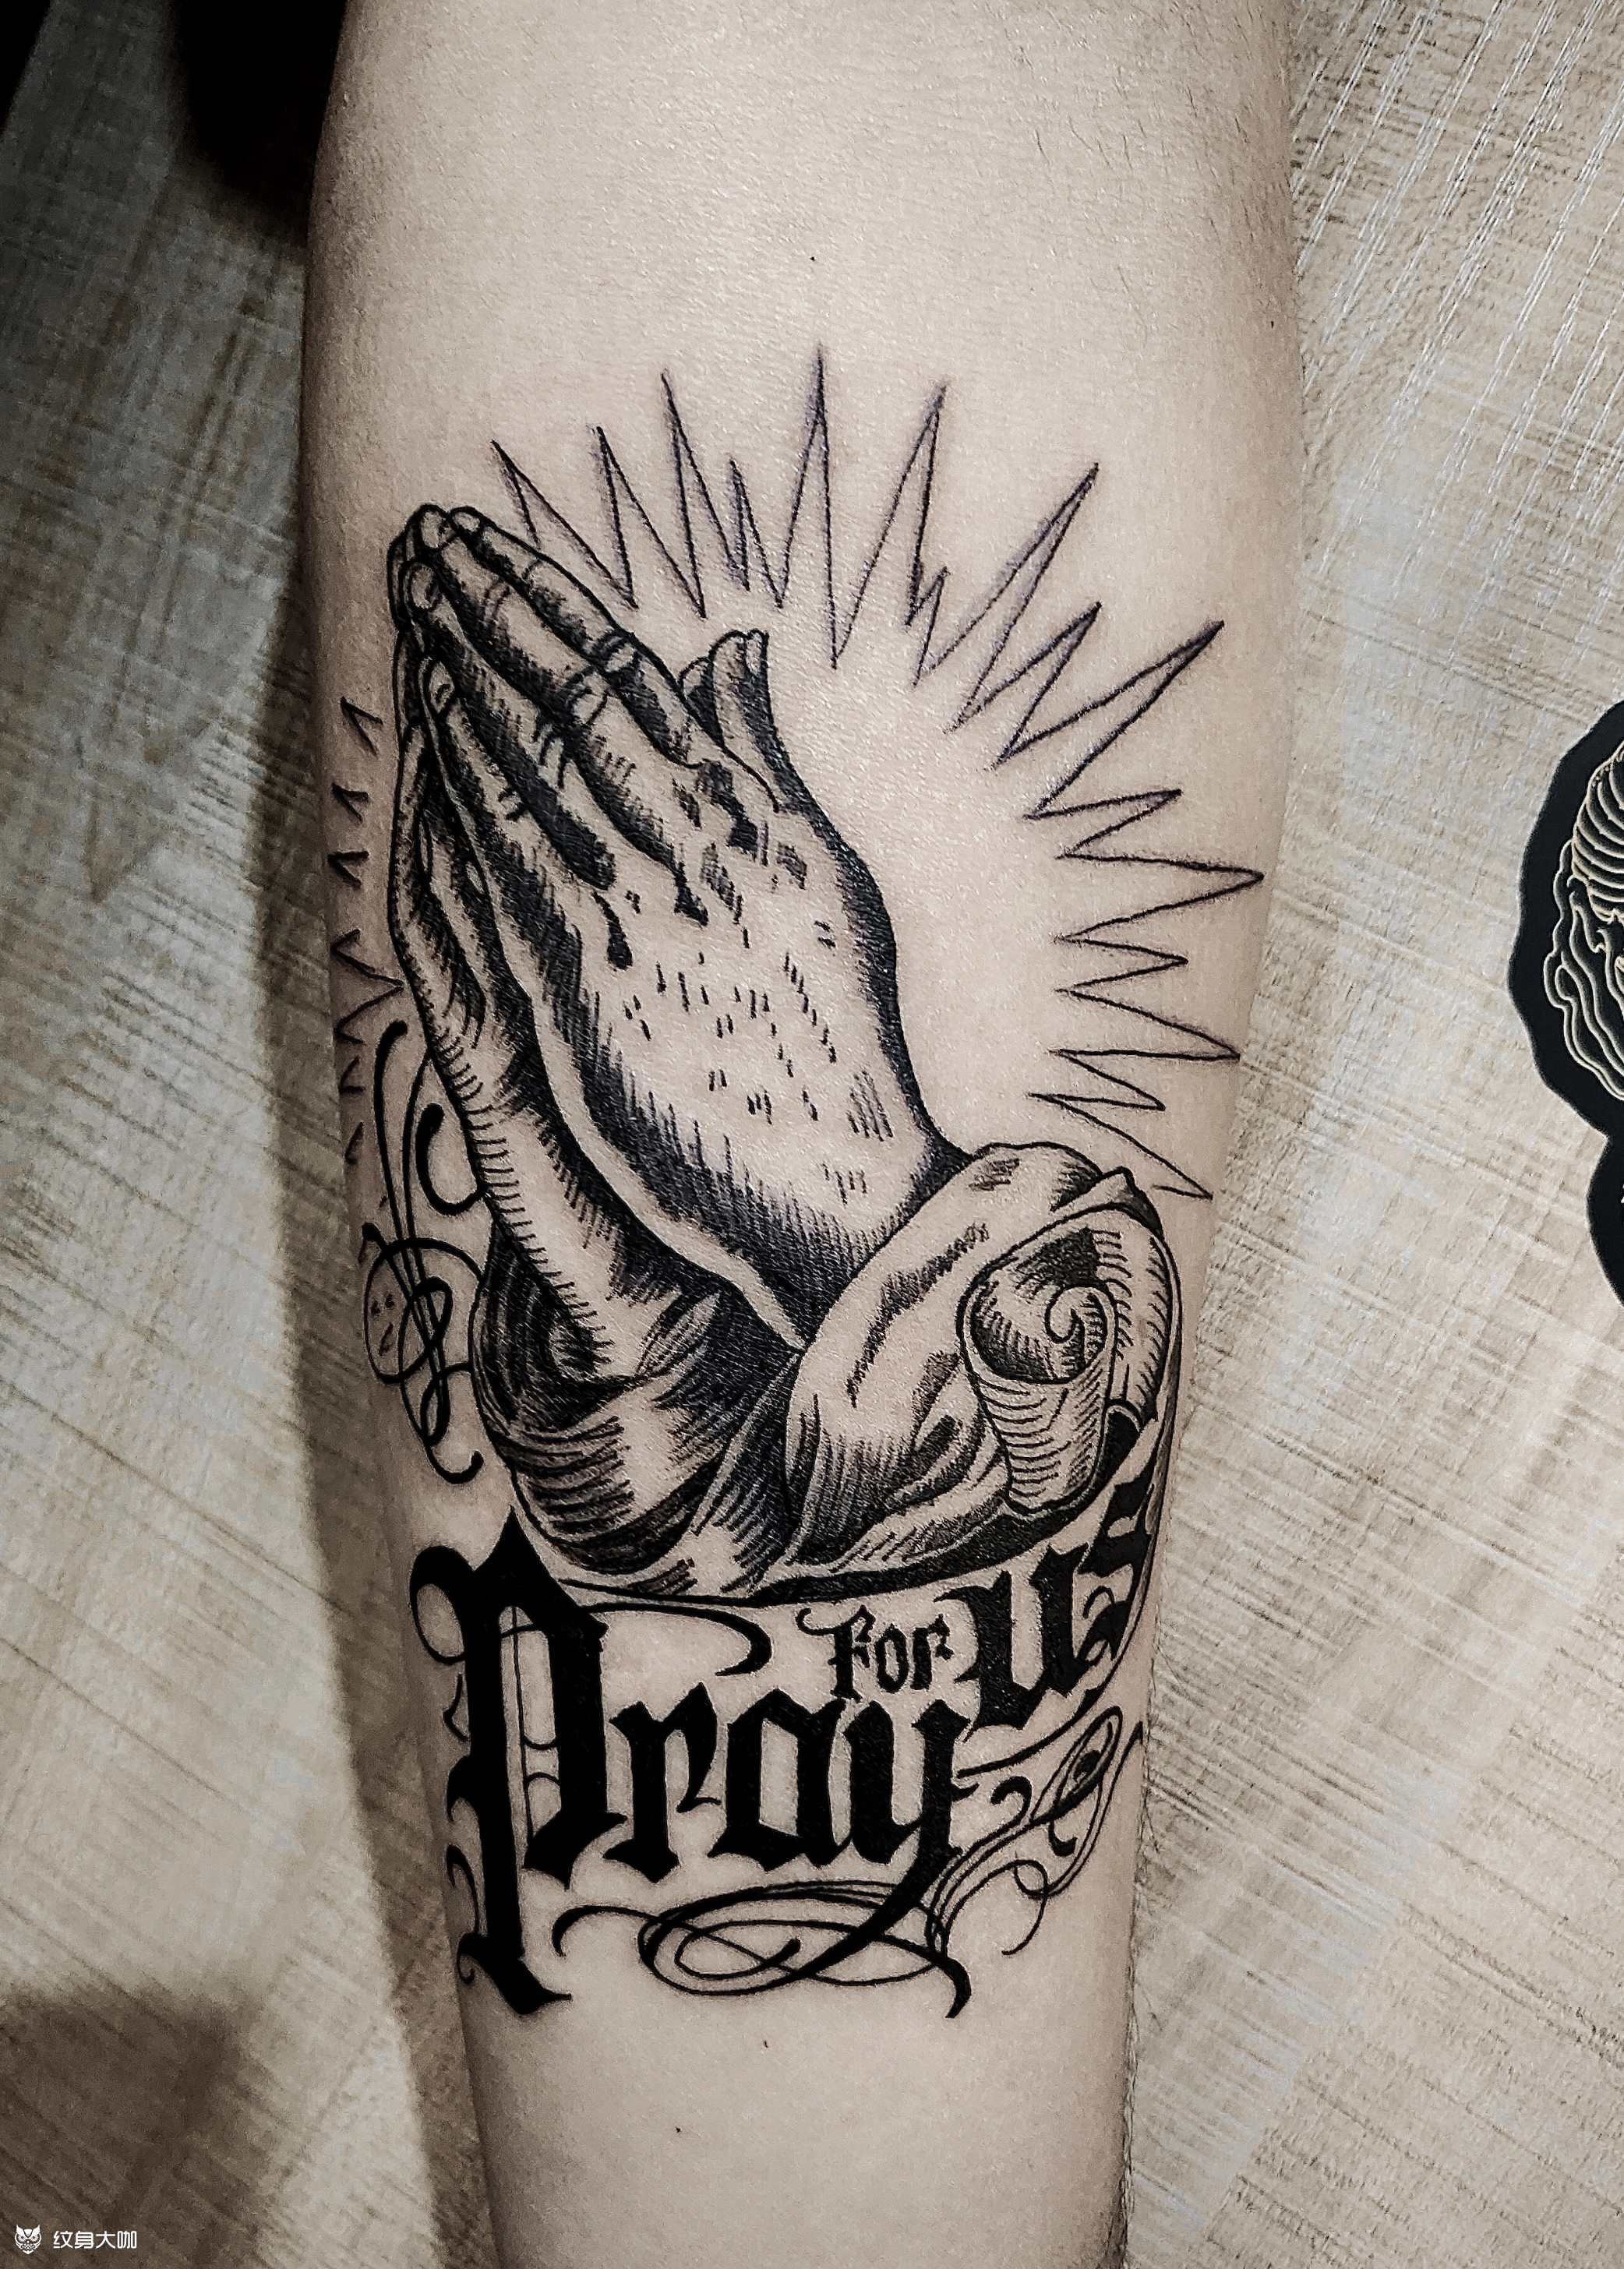 祈祷之手纹身手稿图片